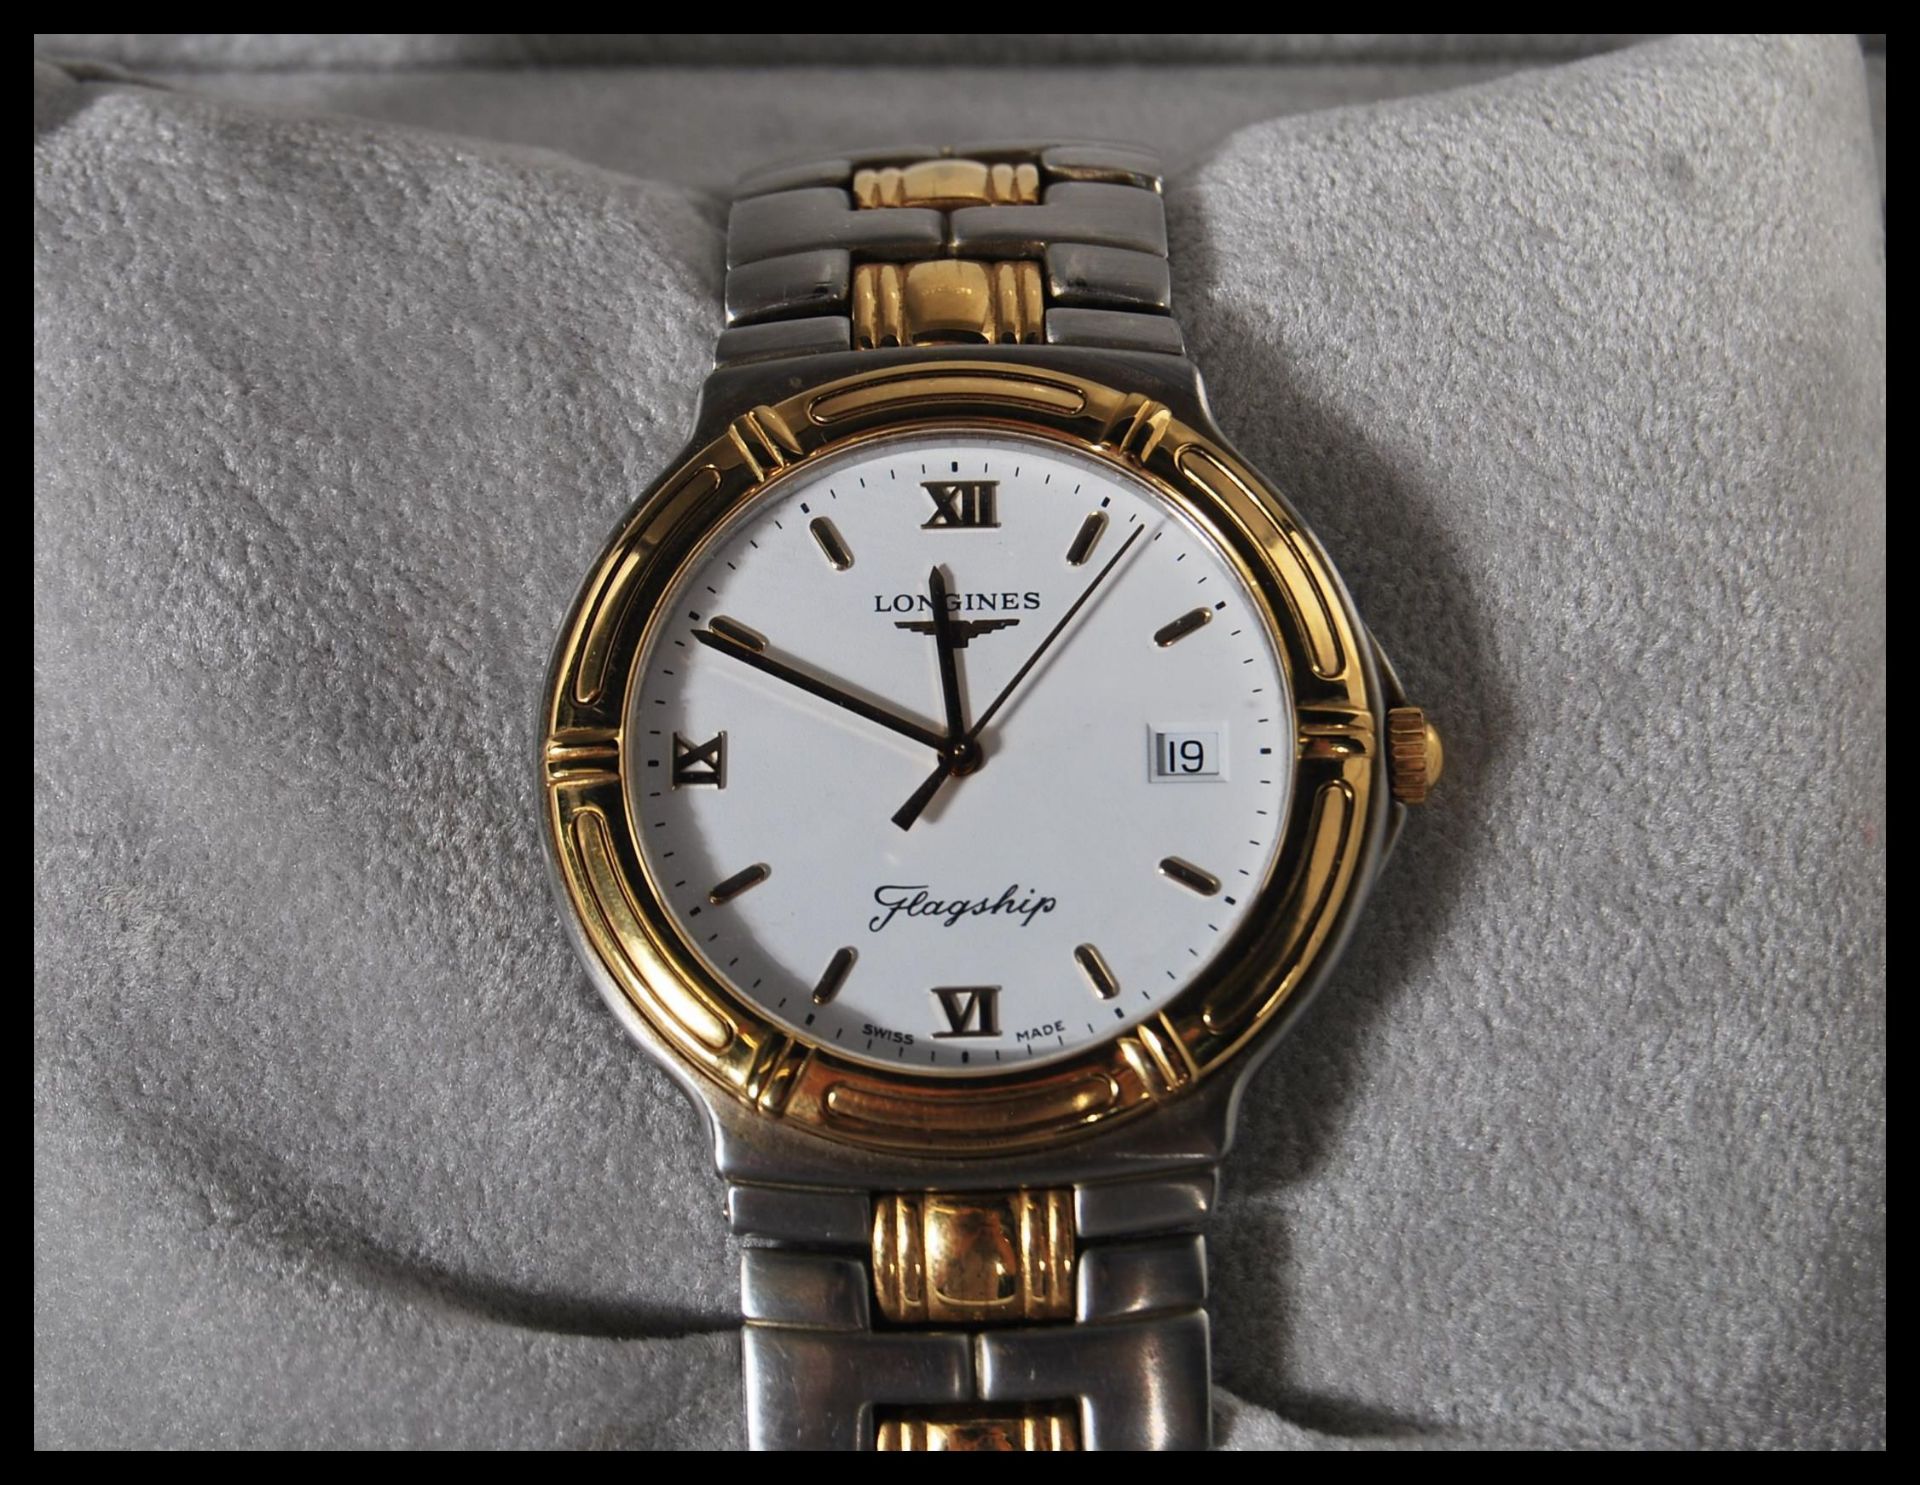 Longines, Flagship, Bi-colour bracelet watch, no. 28163672, current model Movement L5 651 3. - Image 4 of 7